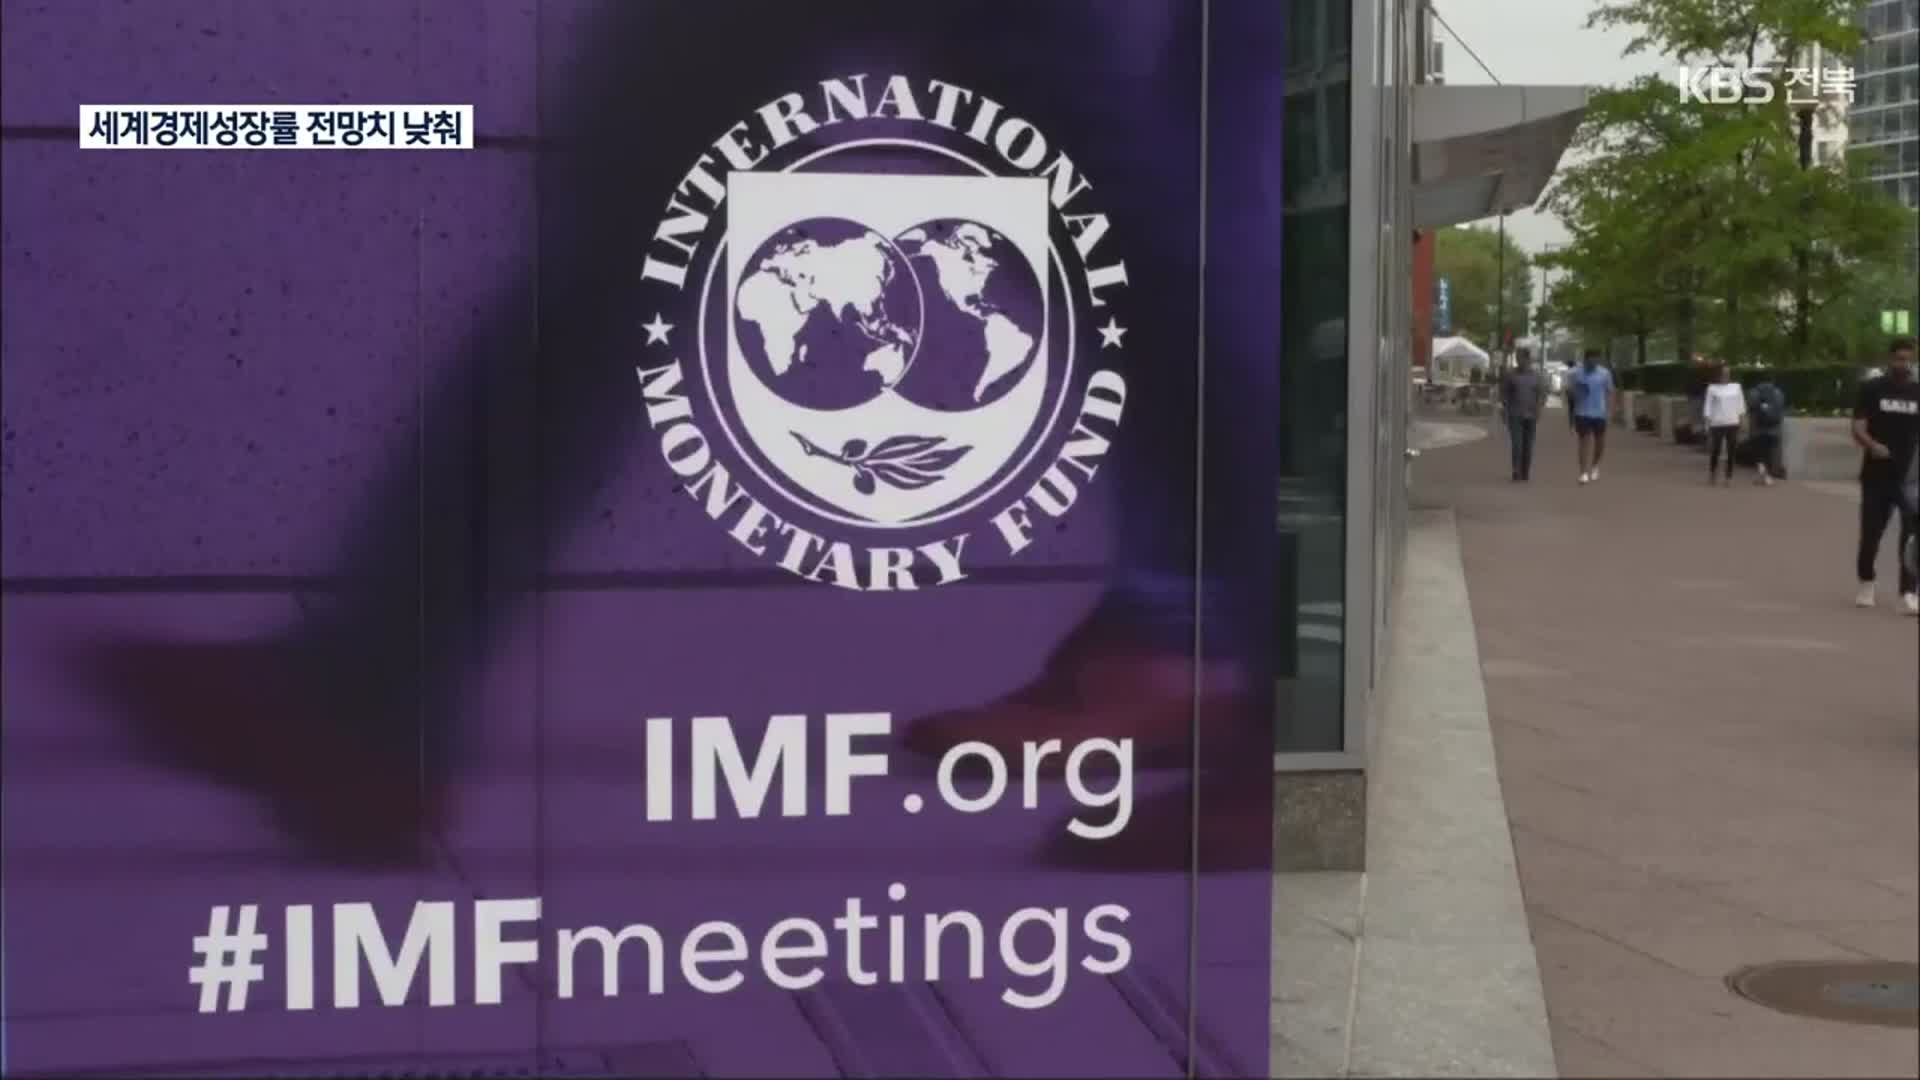 IMF “올해 미국 성장률 전망치 크게 낮춰…G7 중 하락폭 가장 커”